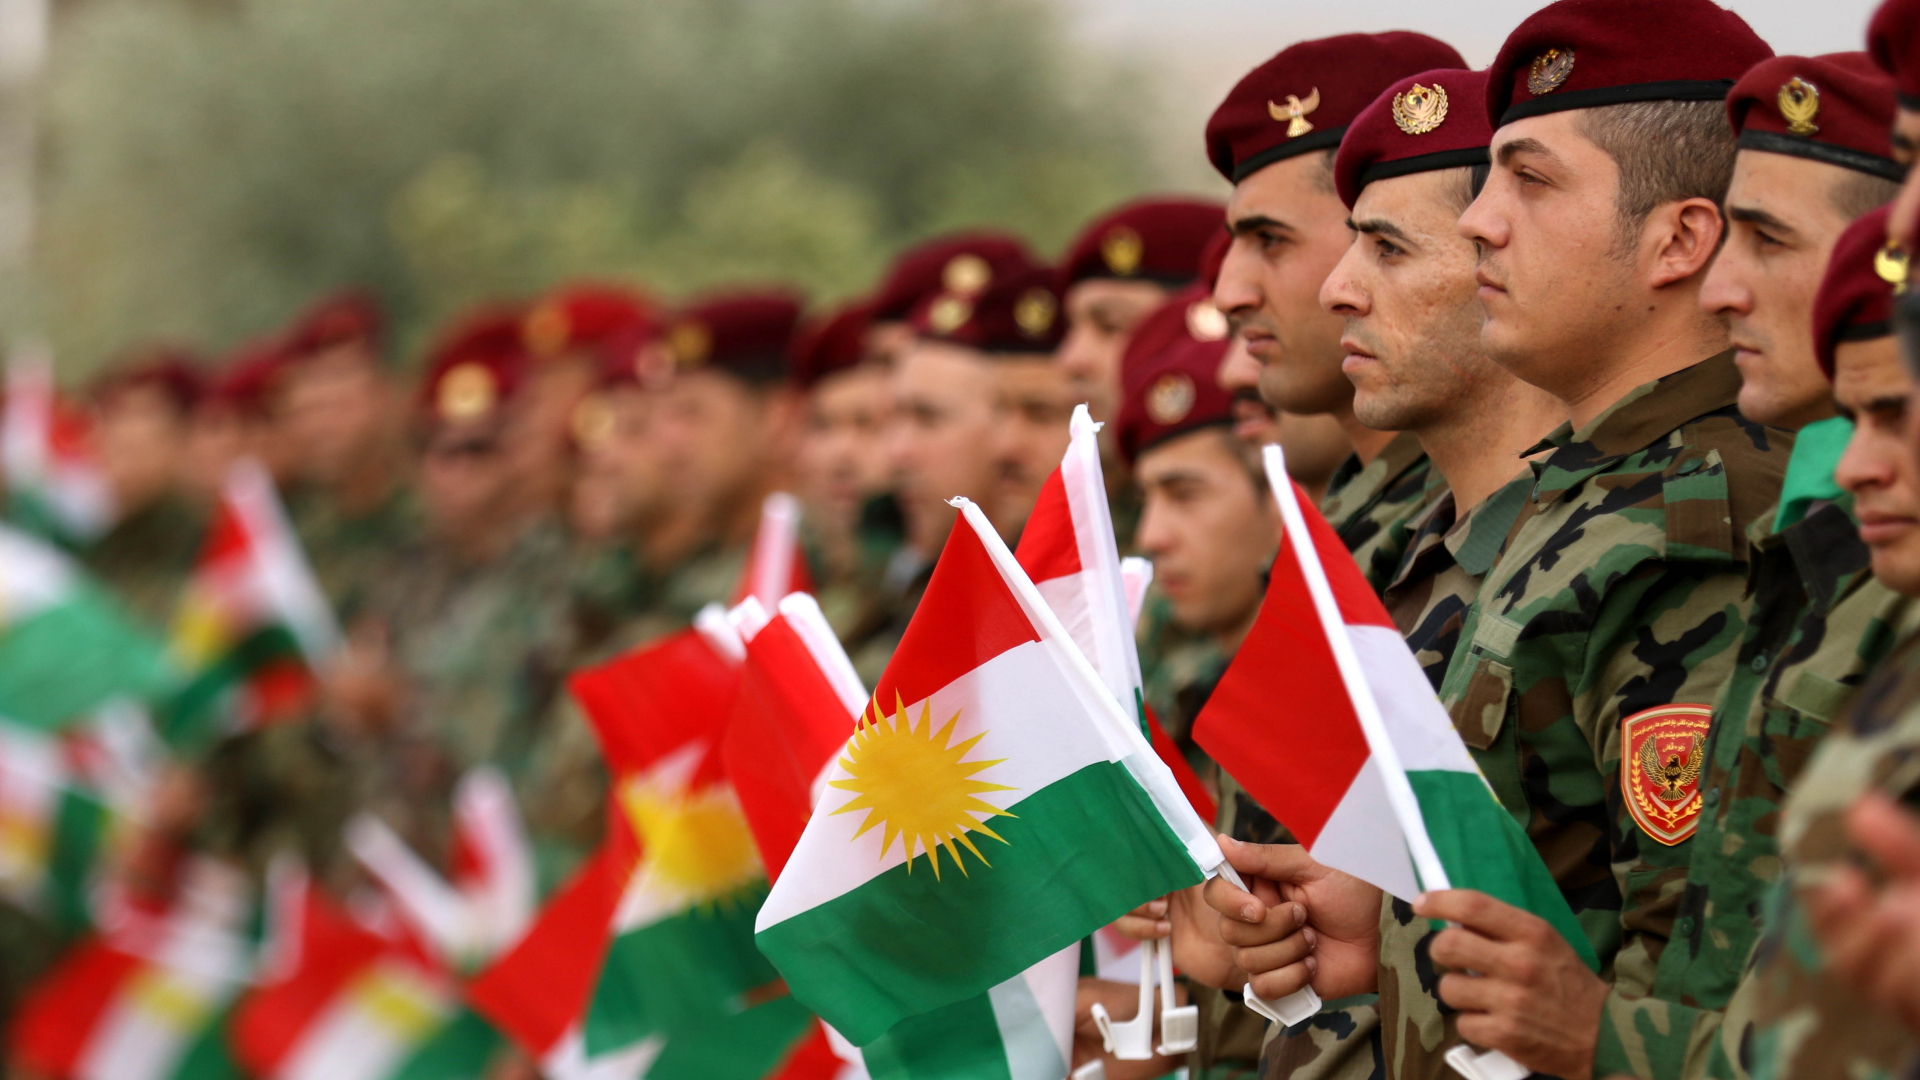 Kurdische Peschmerga-Kämpfer auf einer Veranstaltung für das Unabhängigkeitsreferendum | AFP